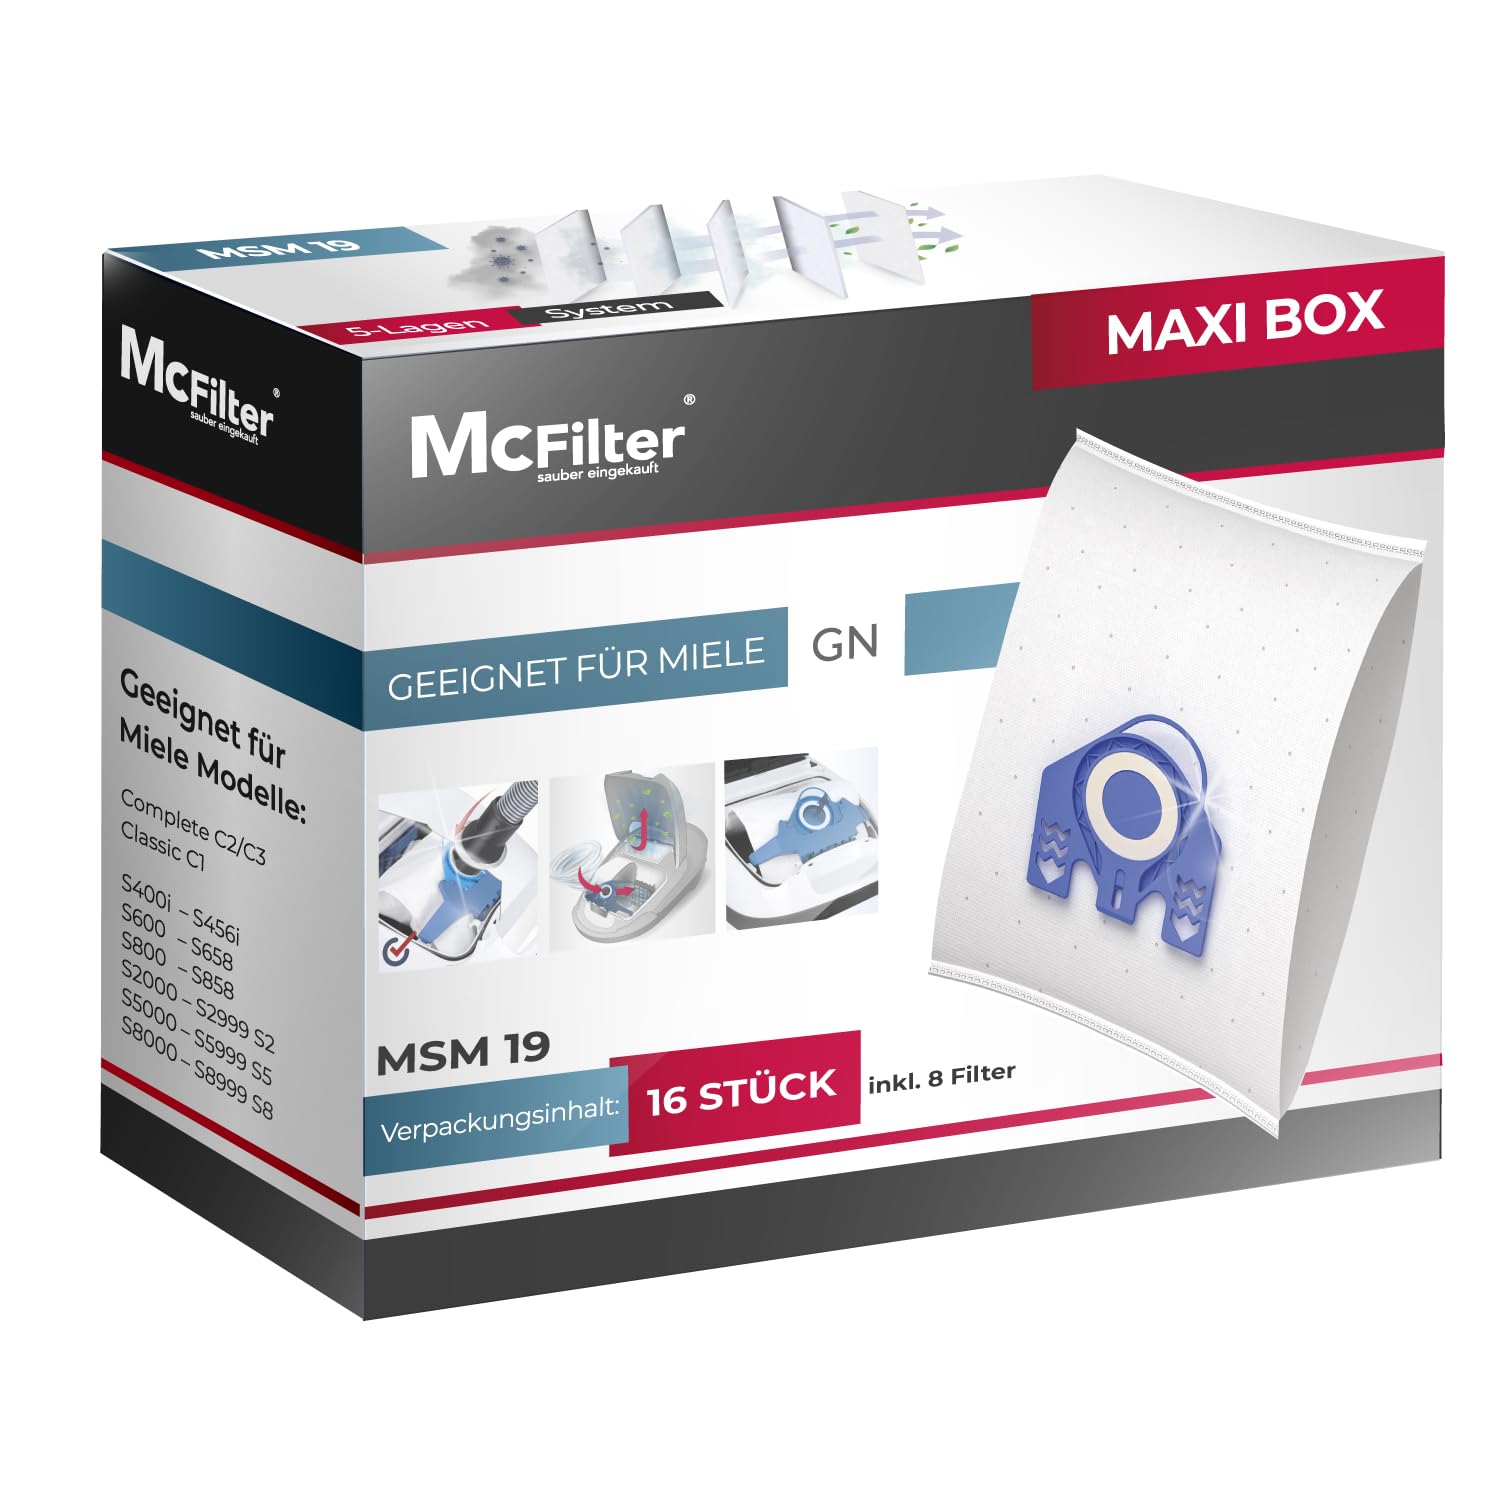 McFilter | 16 Staubsaugerbeutel geeignet für Miele Staubsauger Electronic 2100/2200 / 2210 | Staubbeutel inkl. 8 Filter | MAXI BOX